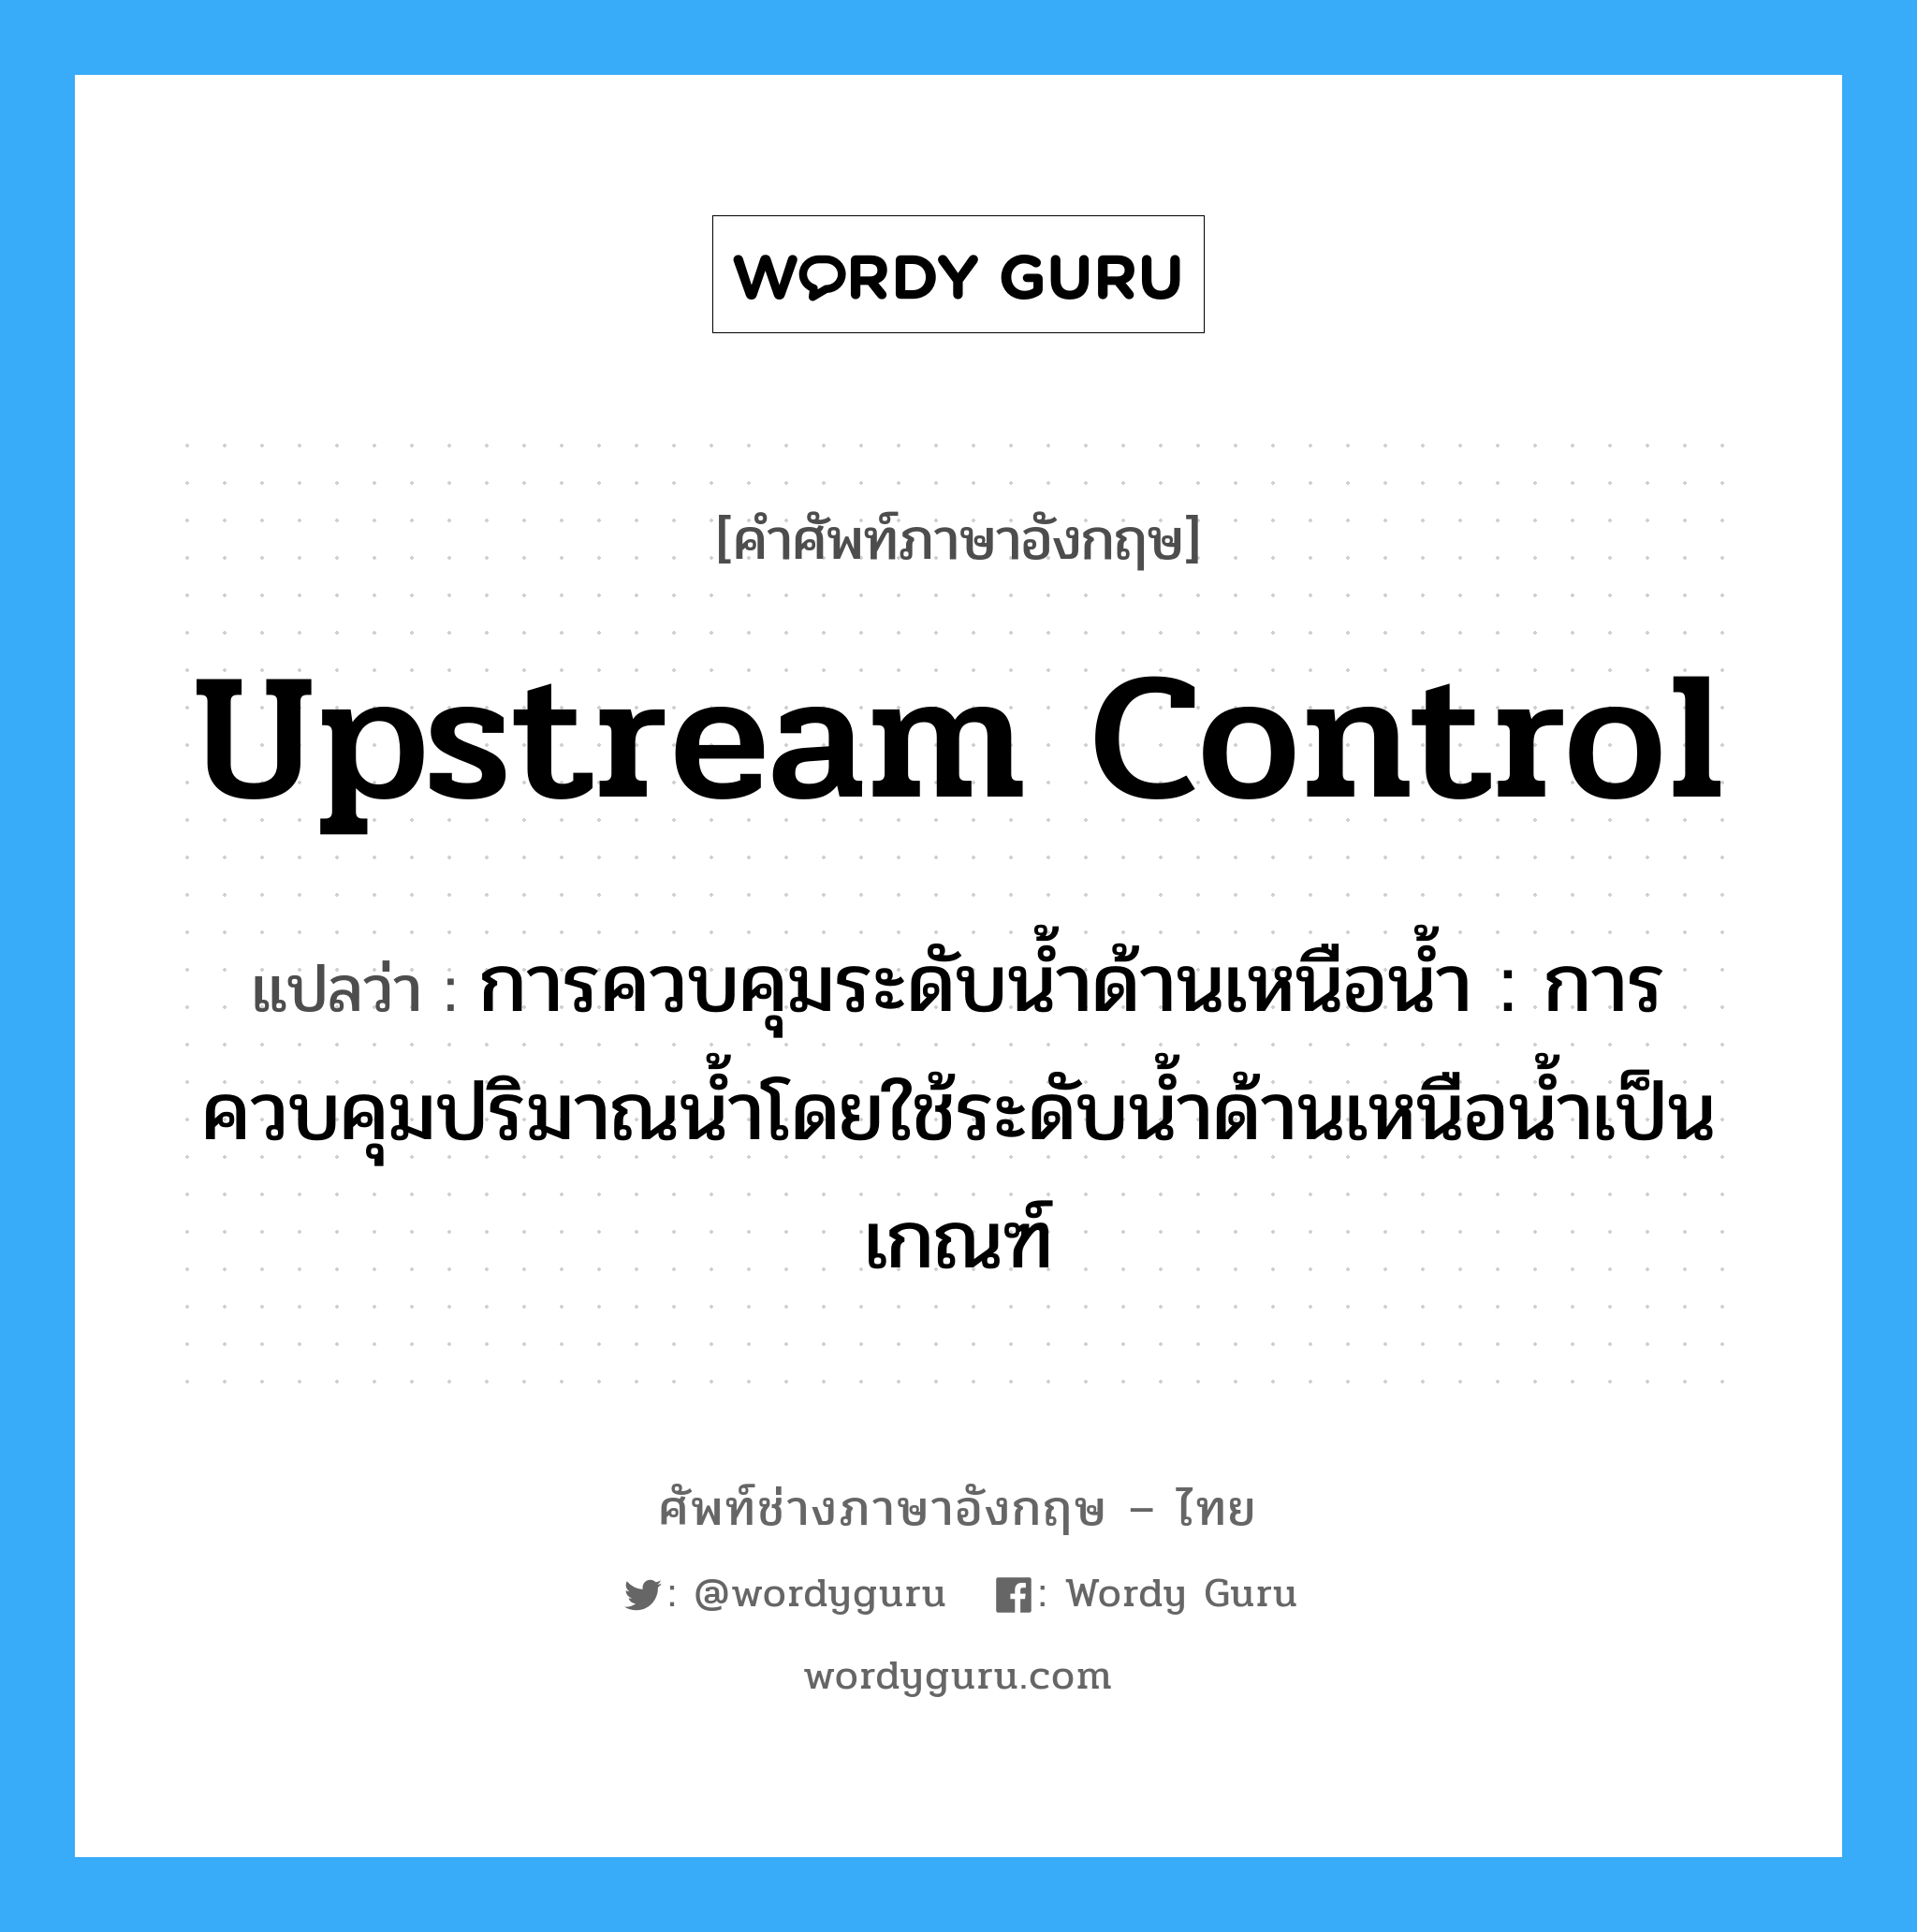 upstream control แปลว่า?, คำศัพท์ช่างภาษาอังกฤษ - ไทย upstream control คำศัพท์ภาษาอังกฤษ upstream control แปลว่า การควบคุมระดับน้ำด้านเหนือน้ำ : การควบคุมปริมาณน้ำโดยใช้ระดับน้ำด้านเหนือน้ำเป็นเกณฑ์